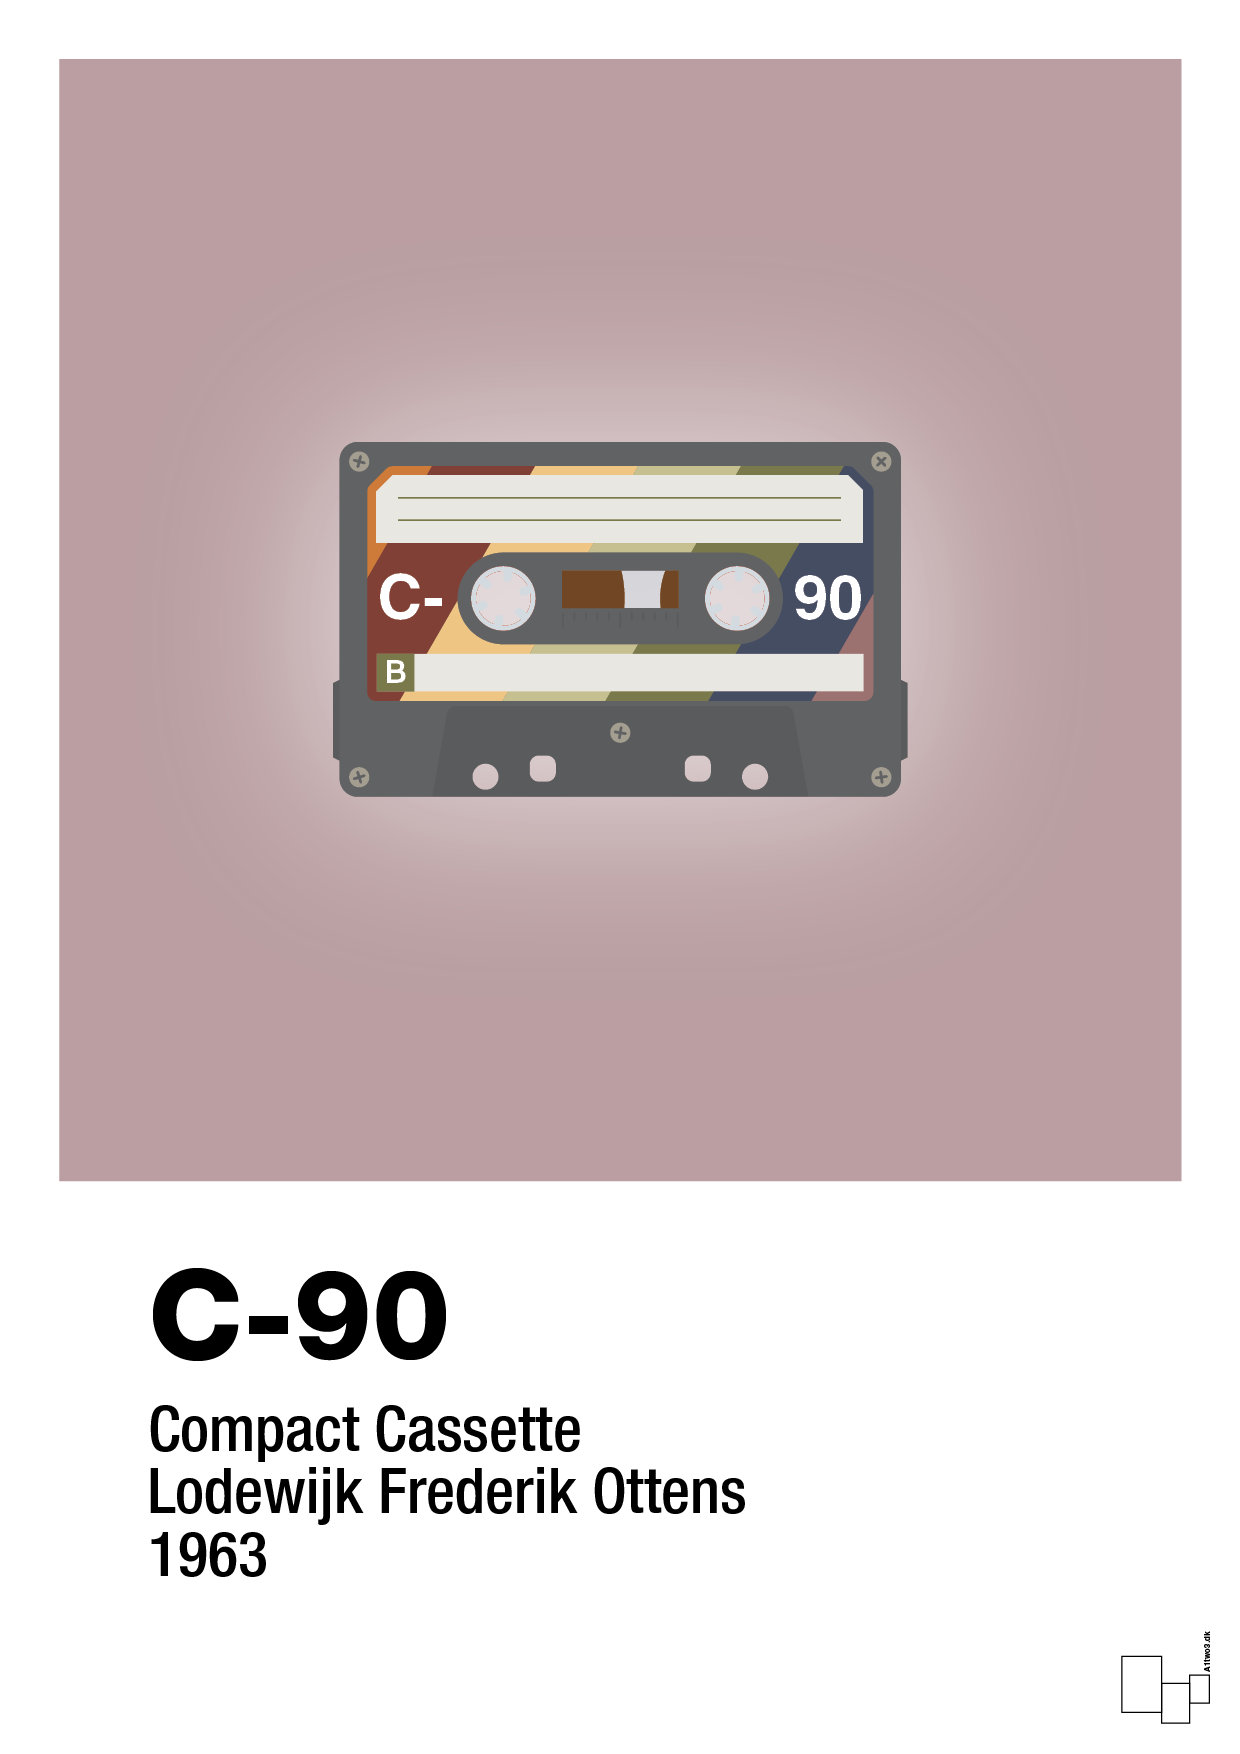 kassettebånd c-90 - Plakat med Grafik i Light Rose